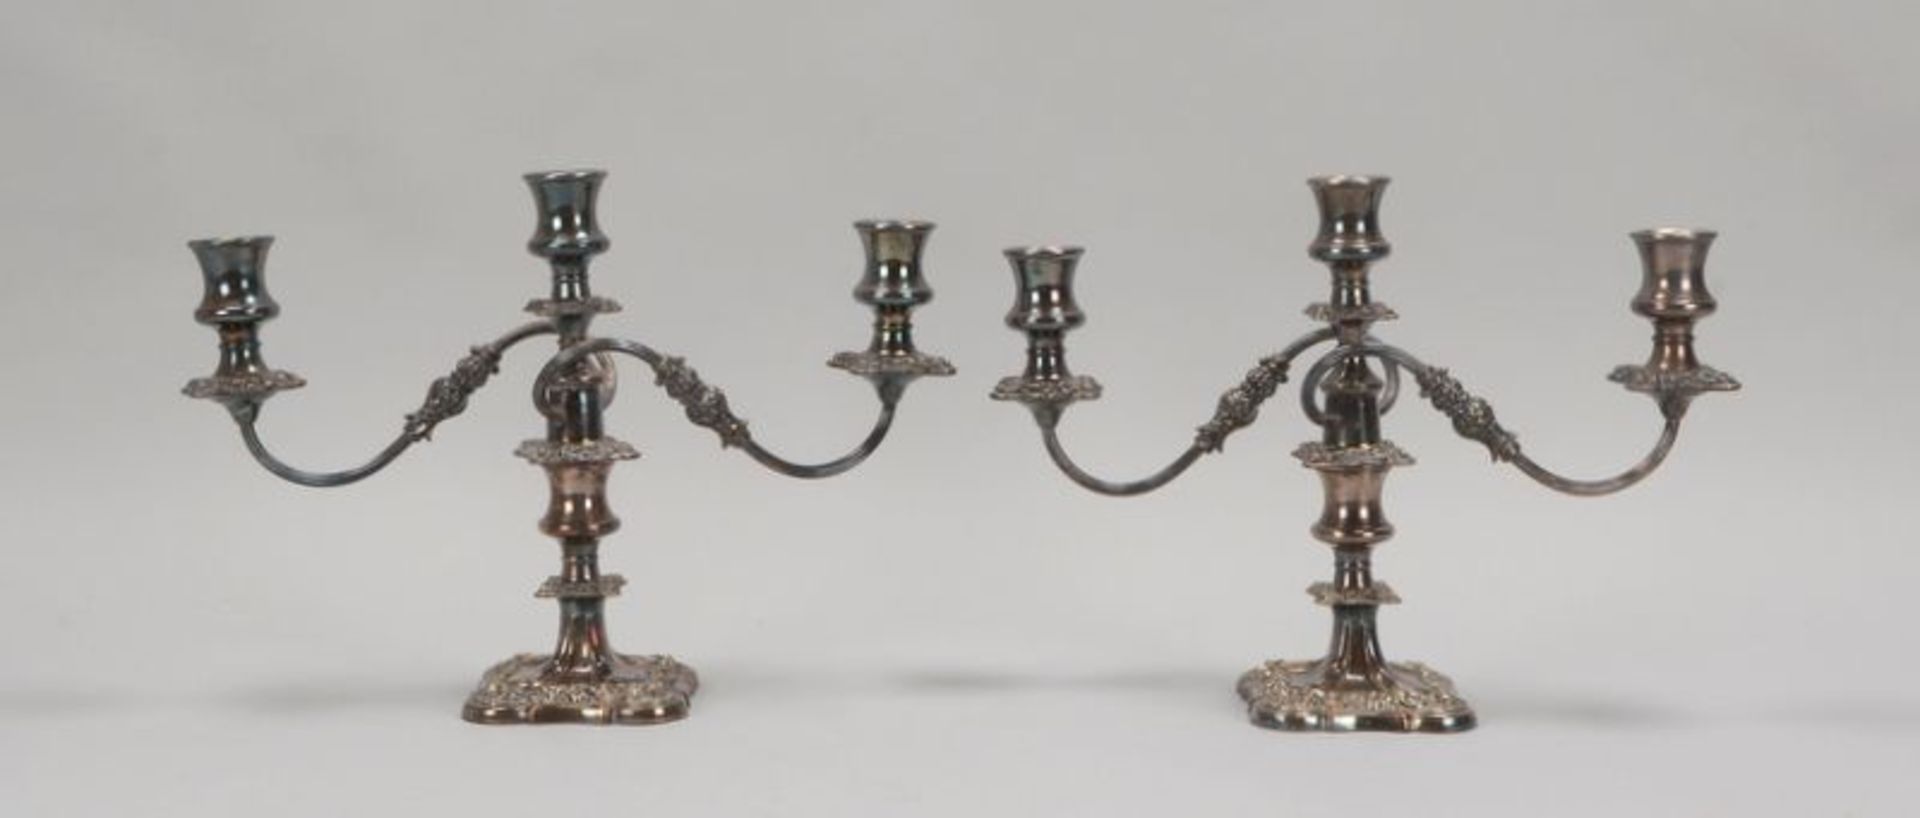 Paar Tischkerzenleuchter (England), 3-flammig, versilbert, 2-teilig, mit reichem floralem Reliefdeko